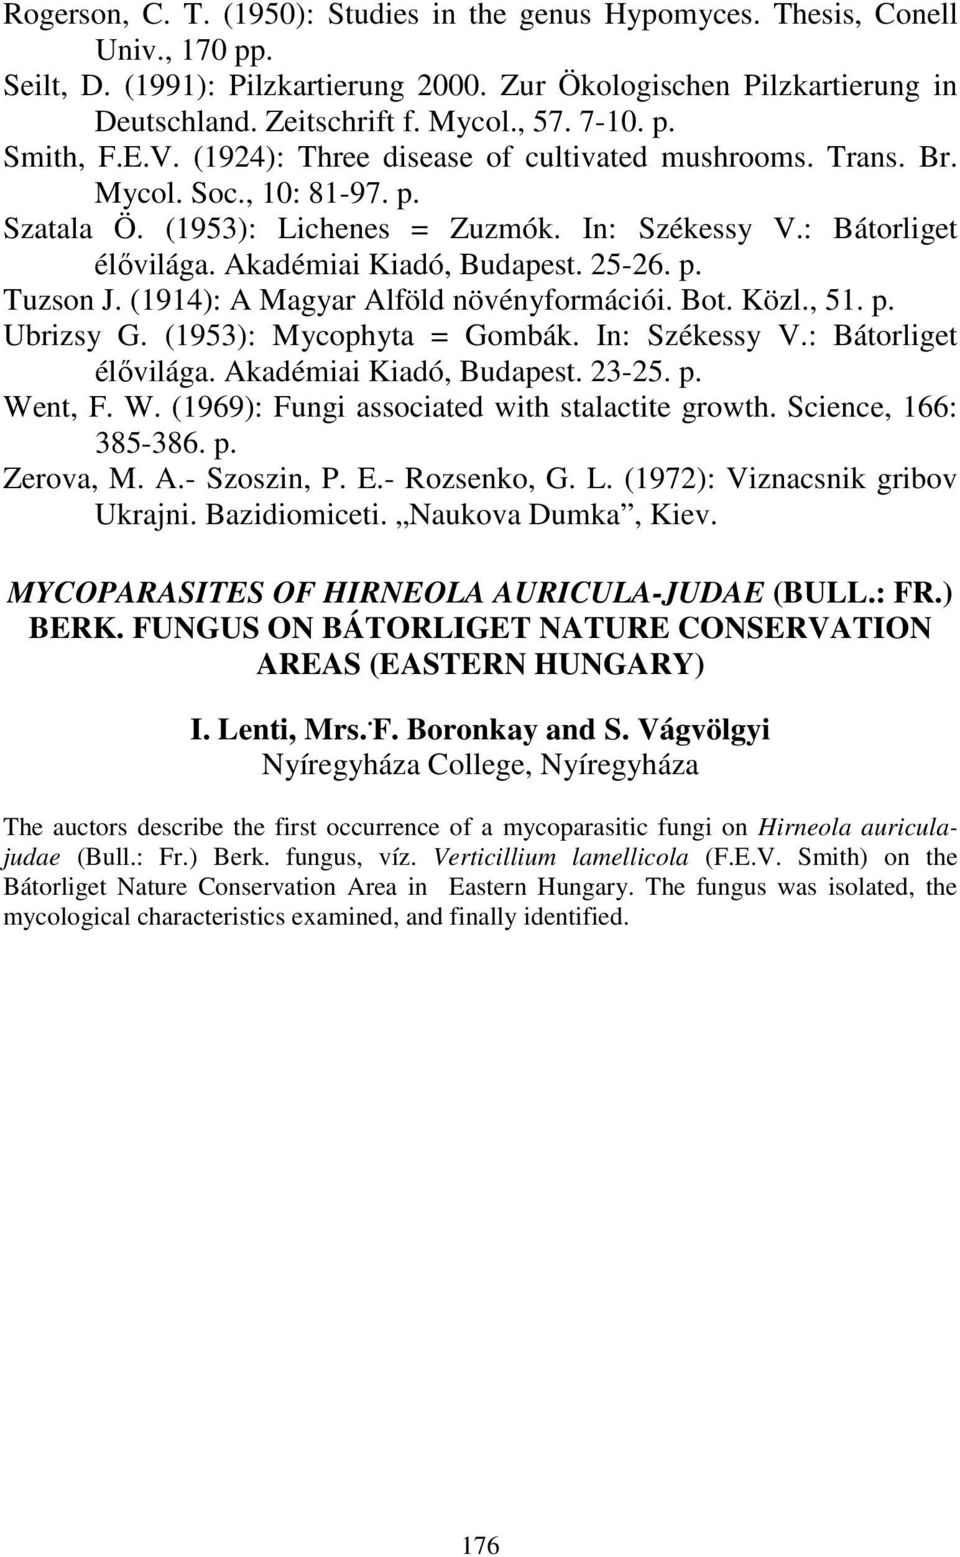 Akadémiai Kiadó, Budapest. 25-26. p. Tuzson J. (1914): A Magyar Alföld növényformációi. Bot. Közl., 51. p. Ubrizsy G. (1953): Mycophyta = Gombák. In: Székessy V.: Bátorliget élıvilága.